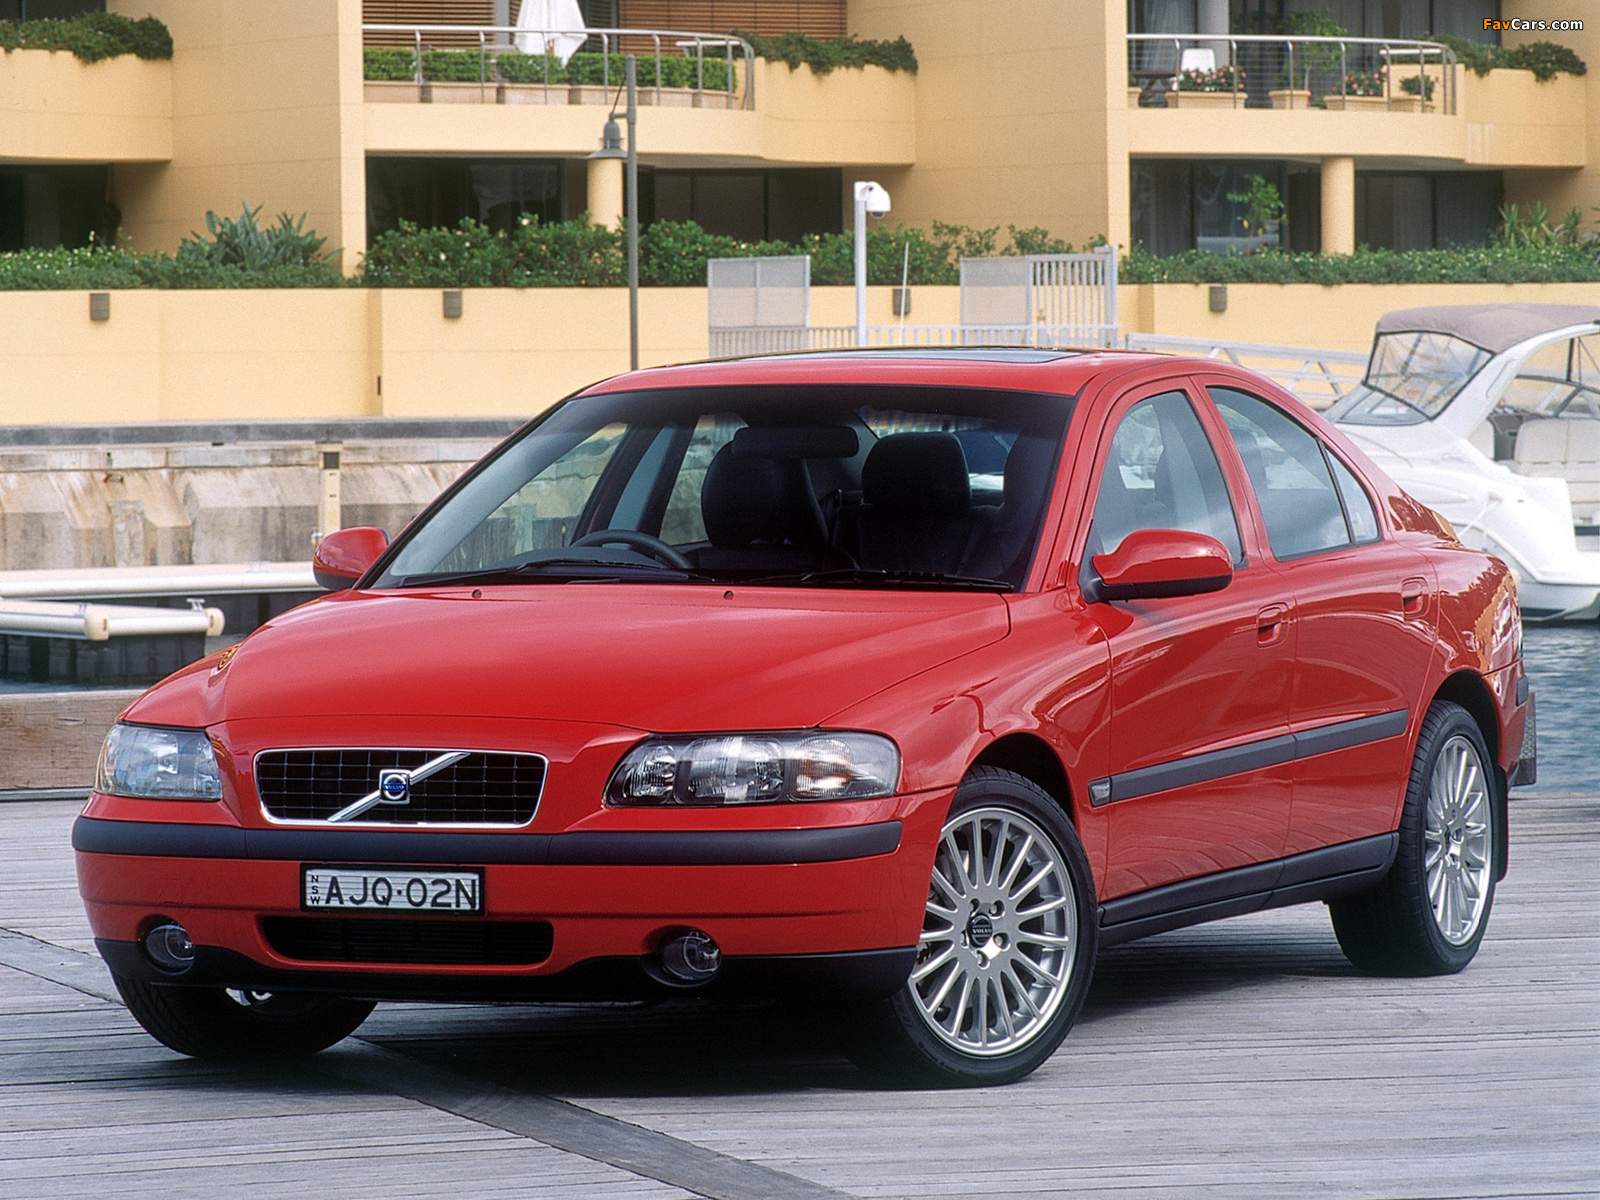 Volvo s60 2001. Вольво s60 2001. Вольво с60 2001. Volvo s60 2008 фото на обои.